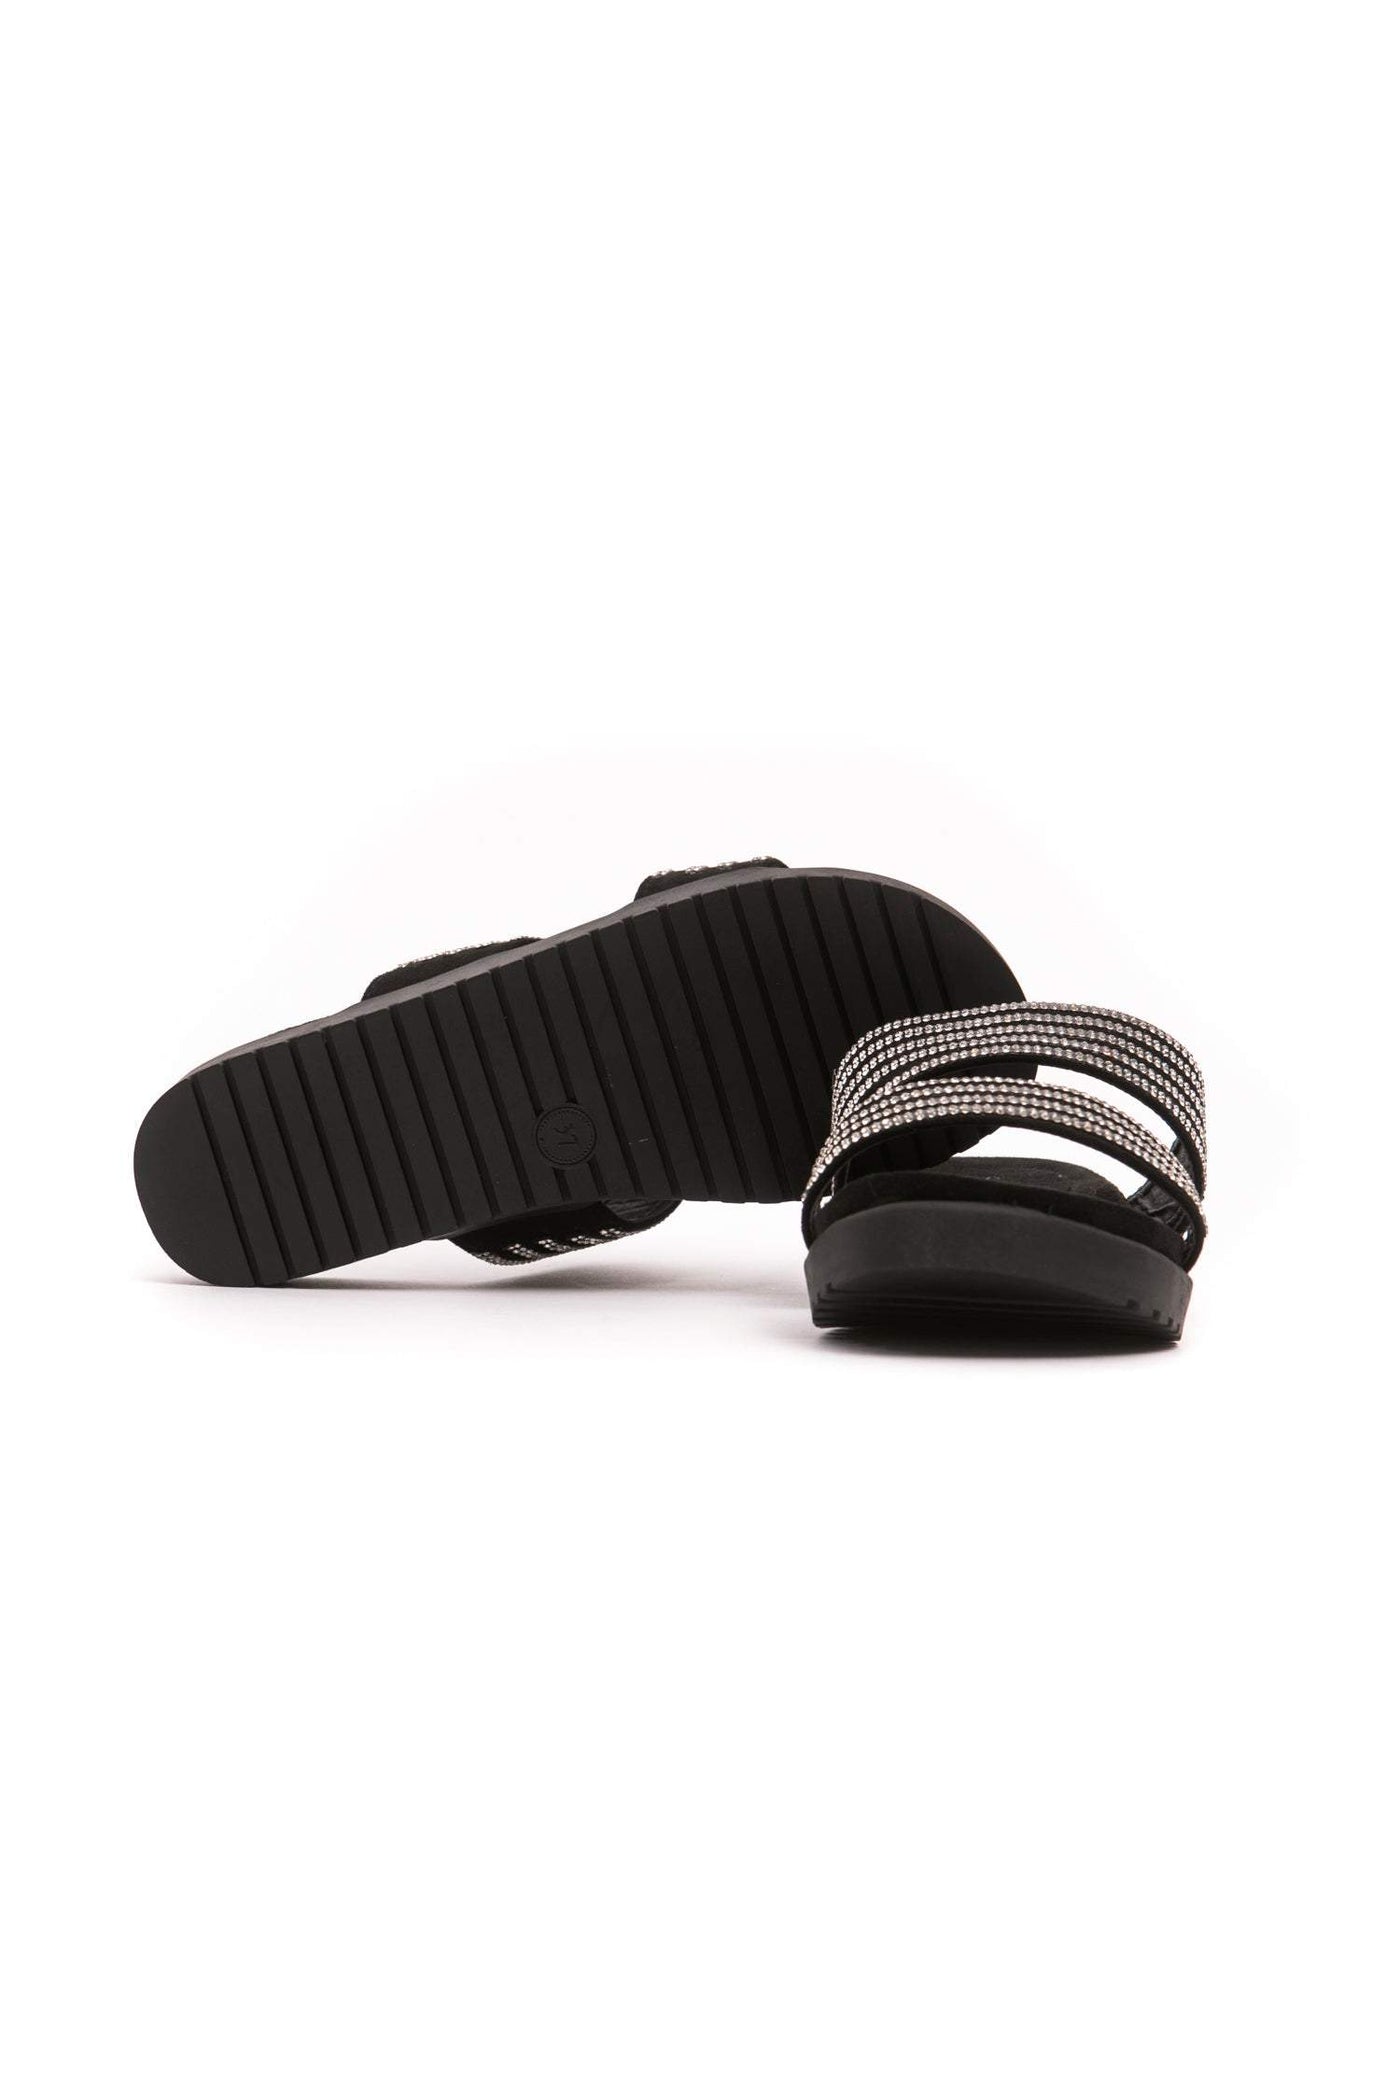 Péché Originel Silver Sandal EU35/US4.5, EU36/US5.5, EU37/US6.5, EU38/US7.5, EU39/US6, EU40/US7, EU41/US8, feed-1, Péché Originel, Sandals - Women - Shoes, Silver at SEYMAYKA